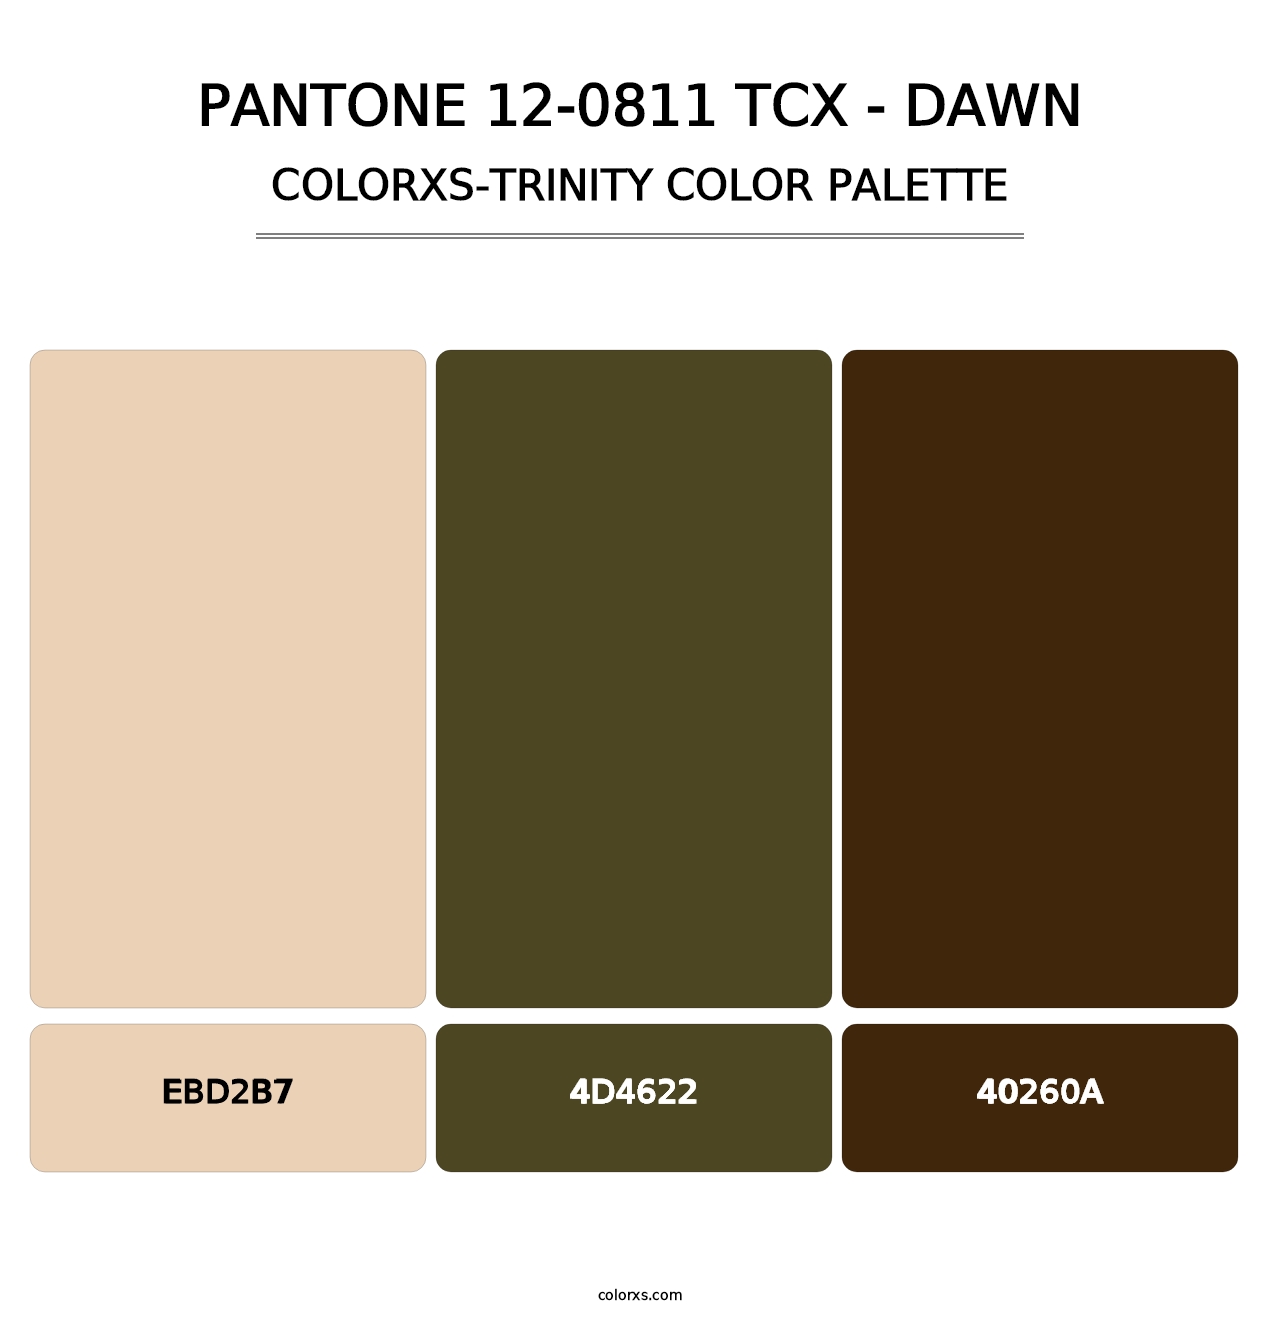 PANTONE 12-0811 TCX - Dawn - Colorxs Trinity Palette